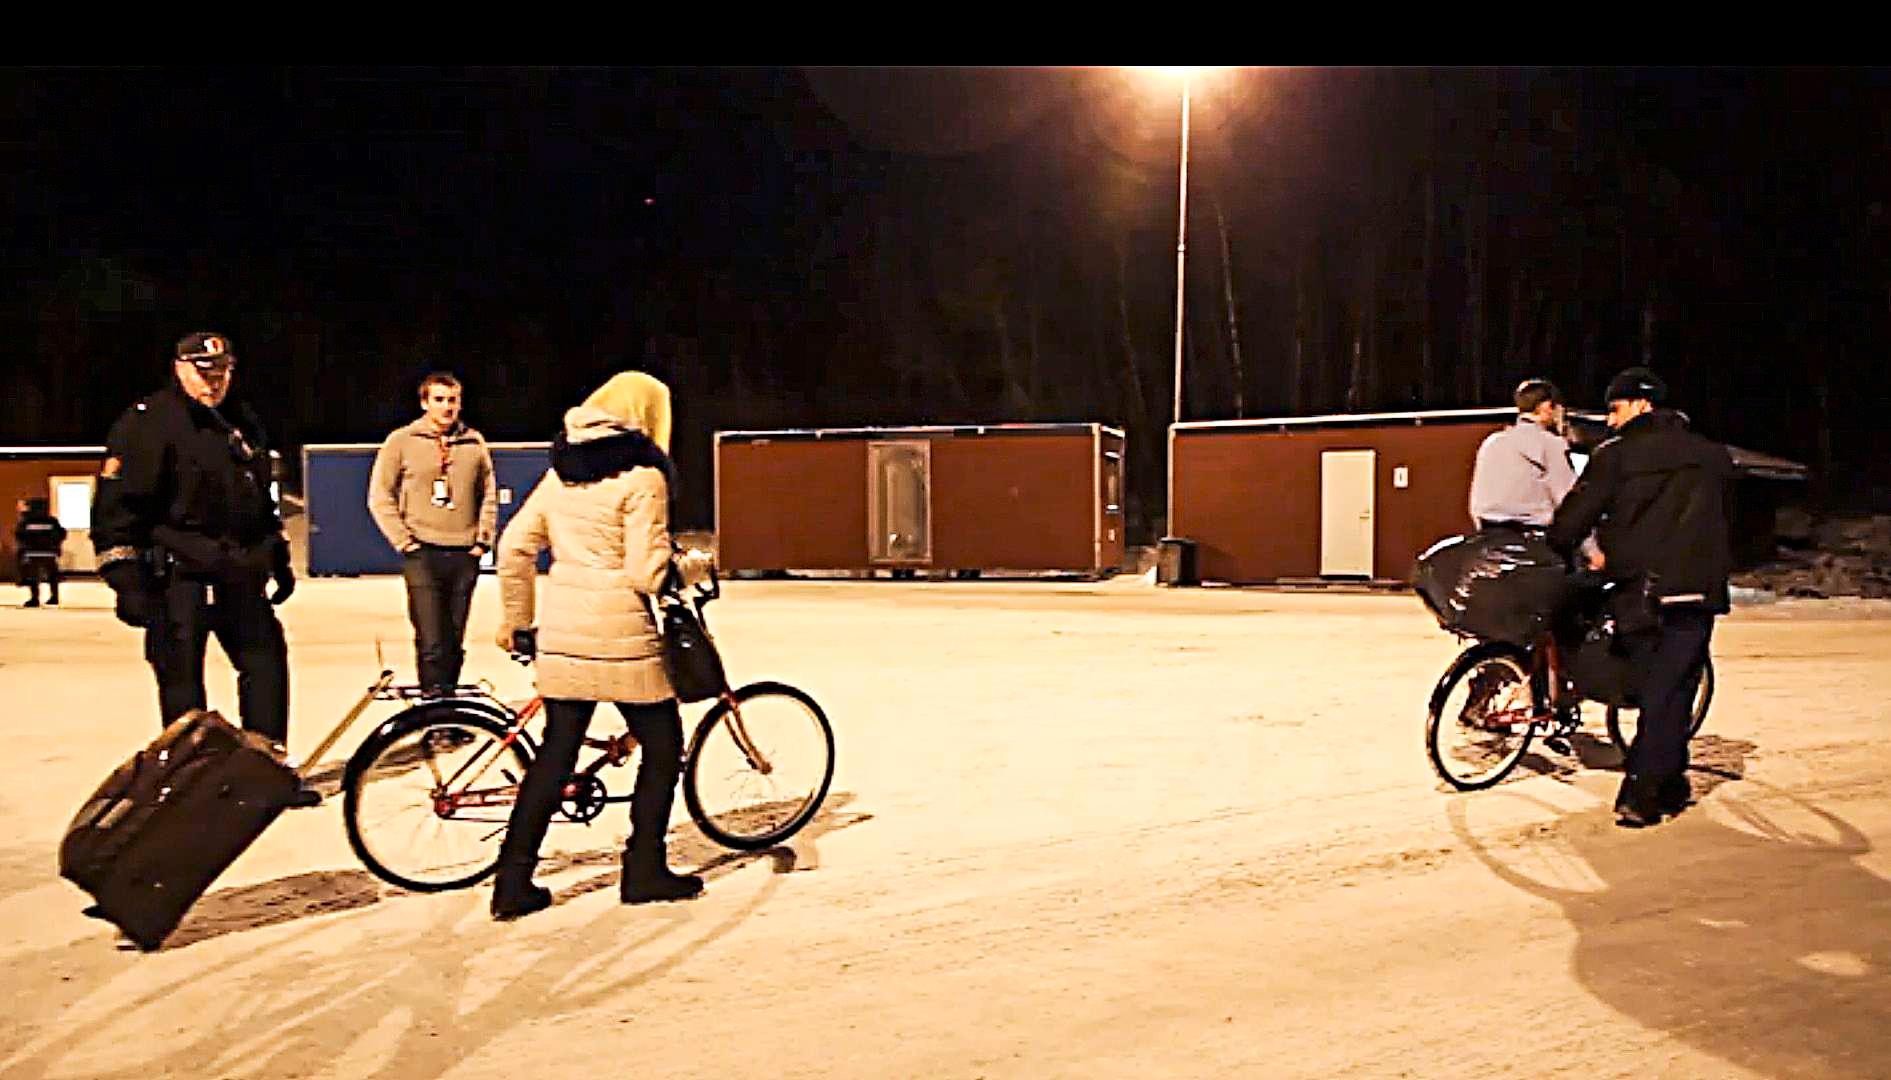 40 asylsøkere er hentet tilbake til Storskog i en politiaksjon den siste uken. Her skysser politiet et par med sykler og bagasje ut fra norsk territorium. 